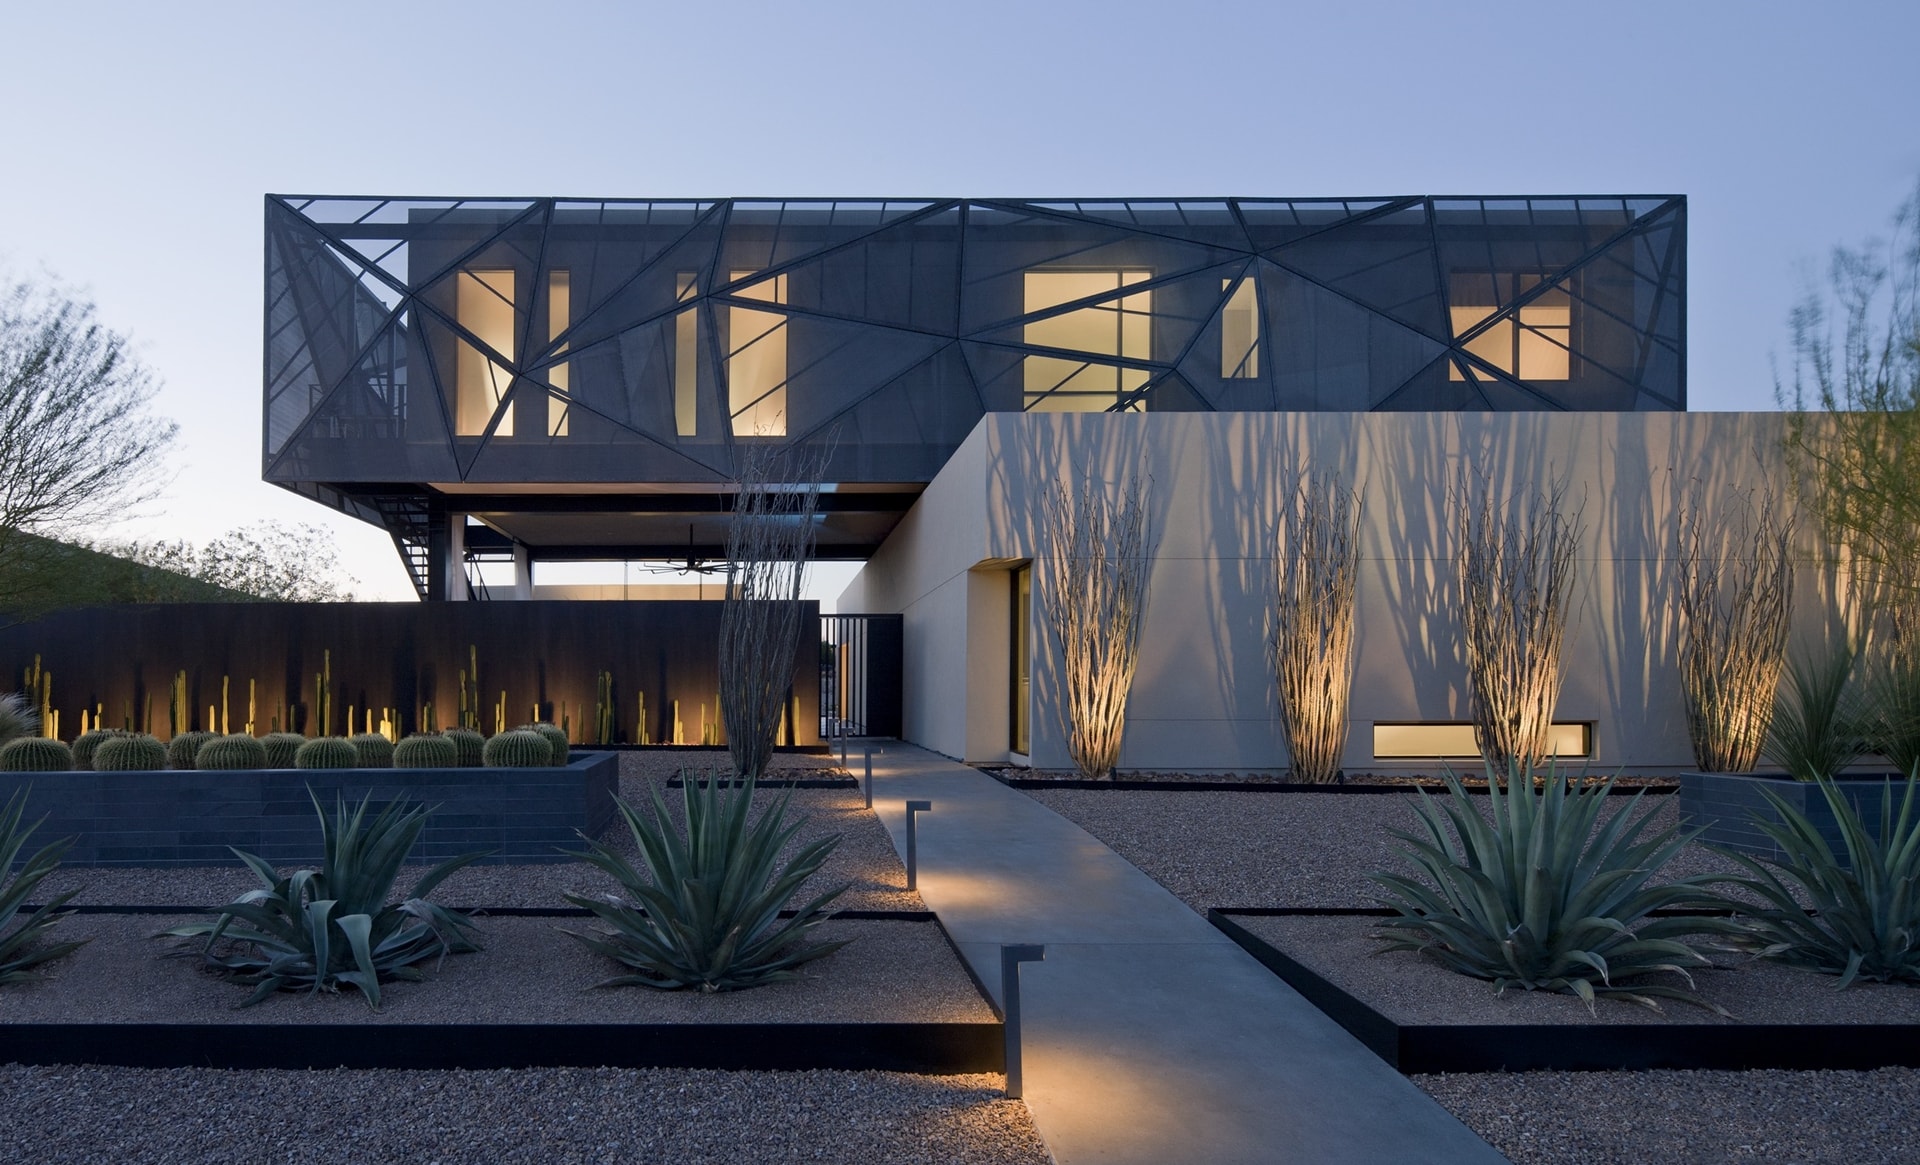 Facade of modern desert house designed by assemblageSTUDIO